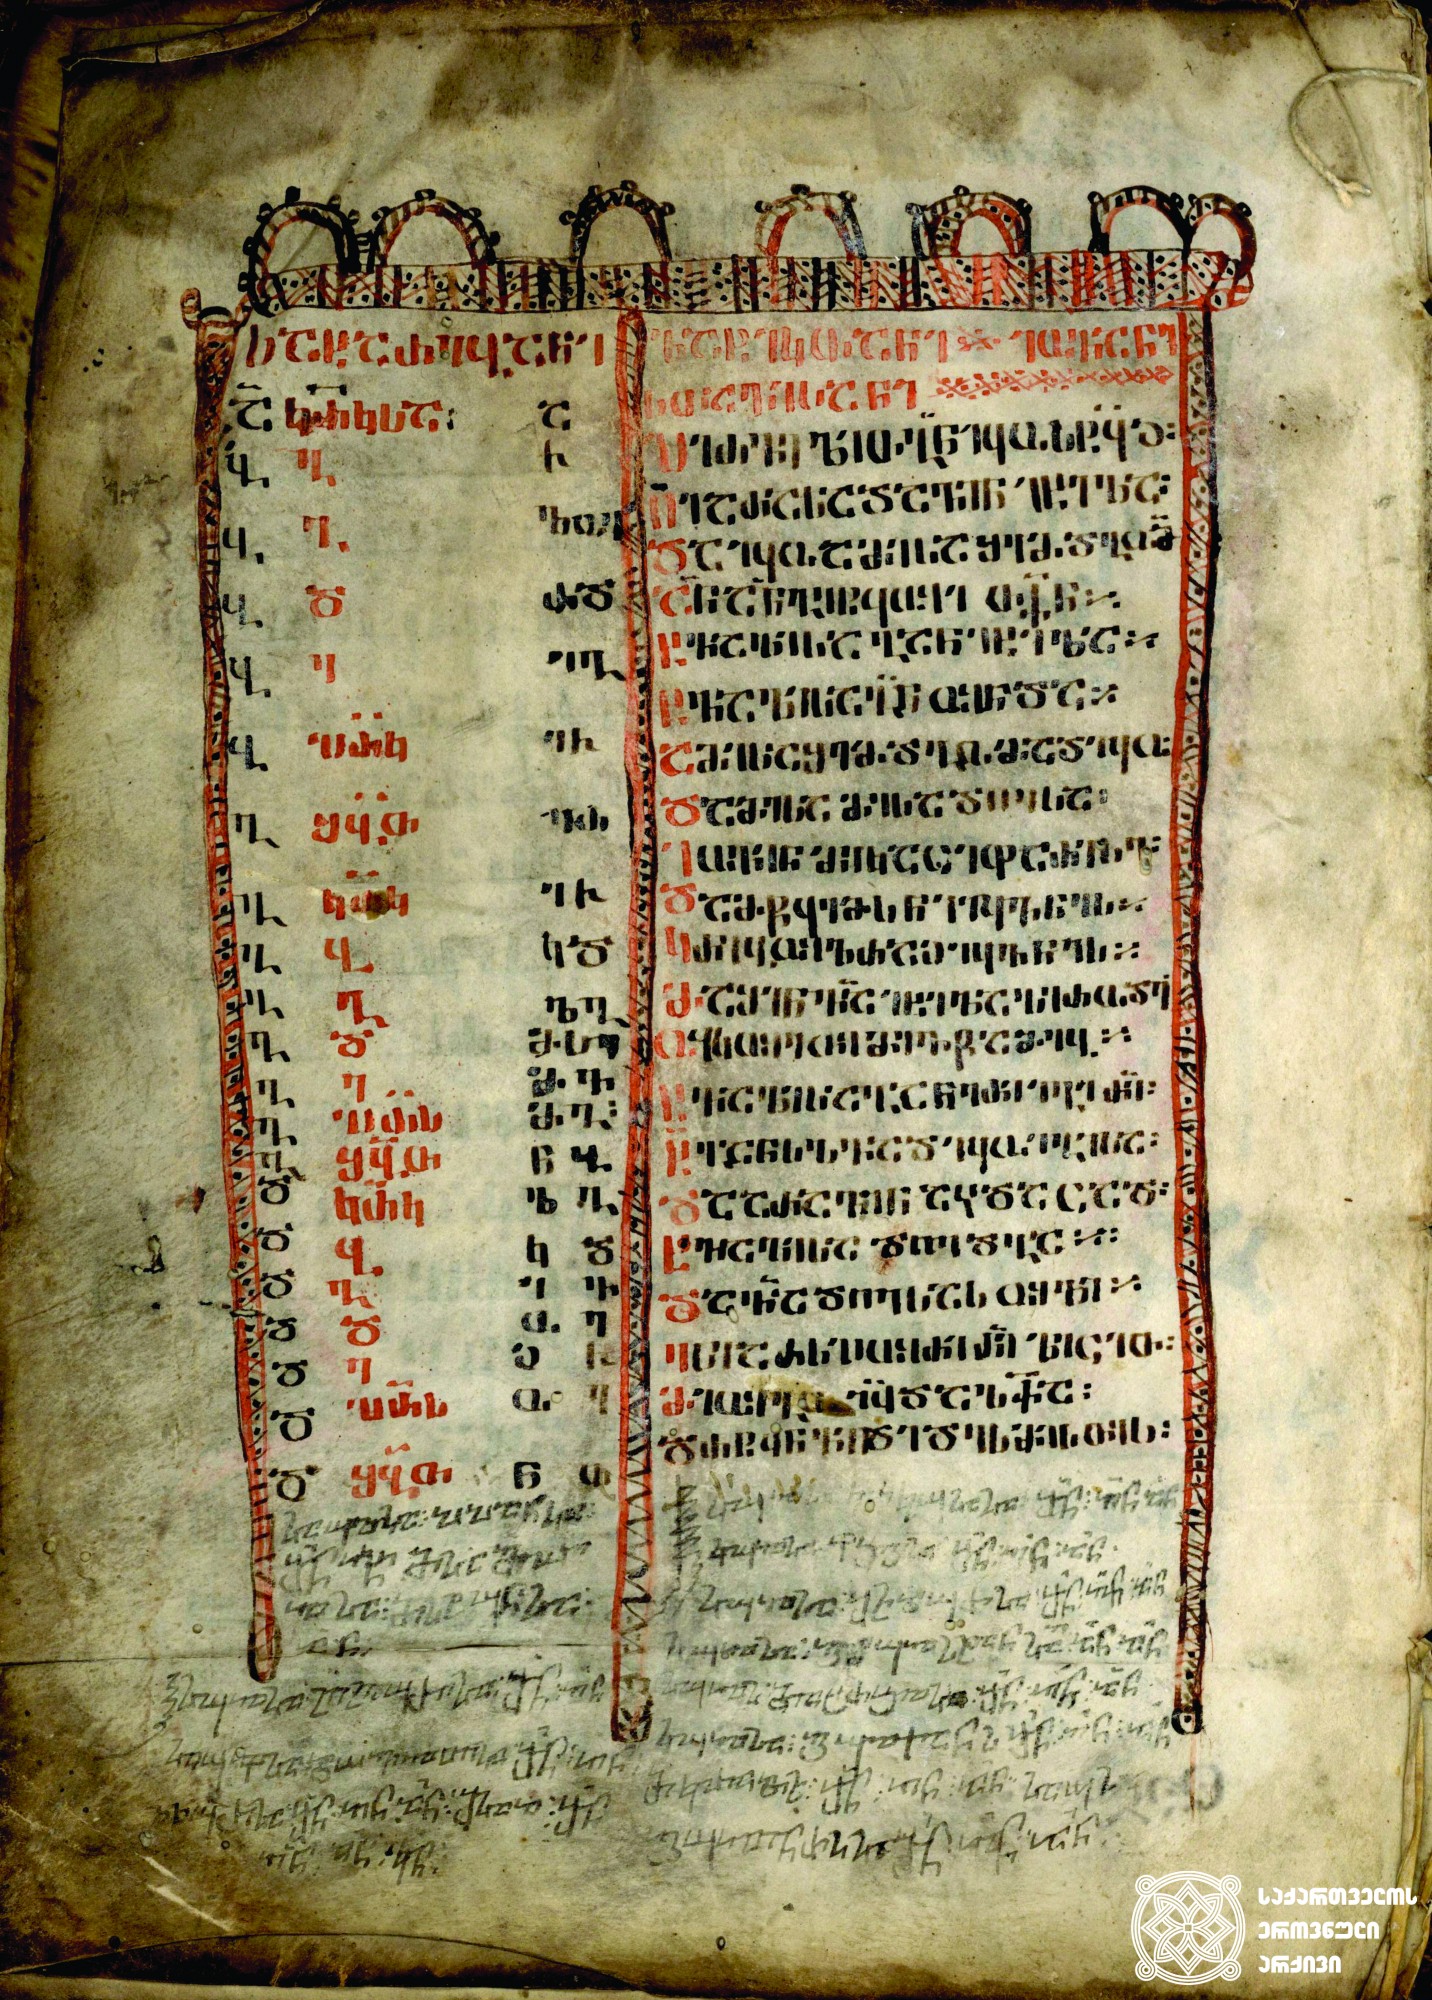 ანბანდიდი სახარება, IX საუკუნე <br>
Four Gospels, 9th c.